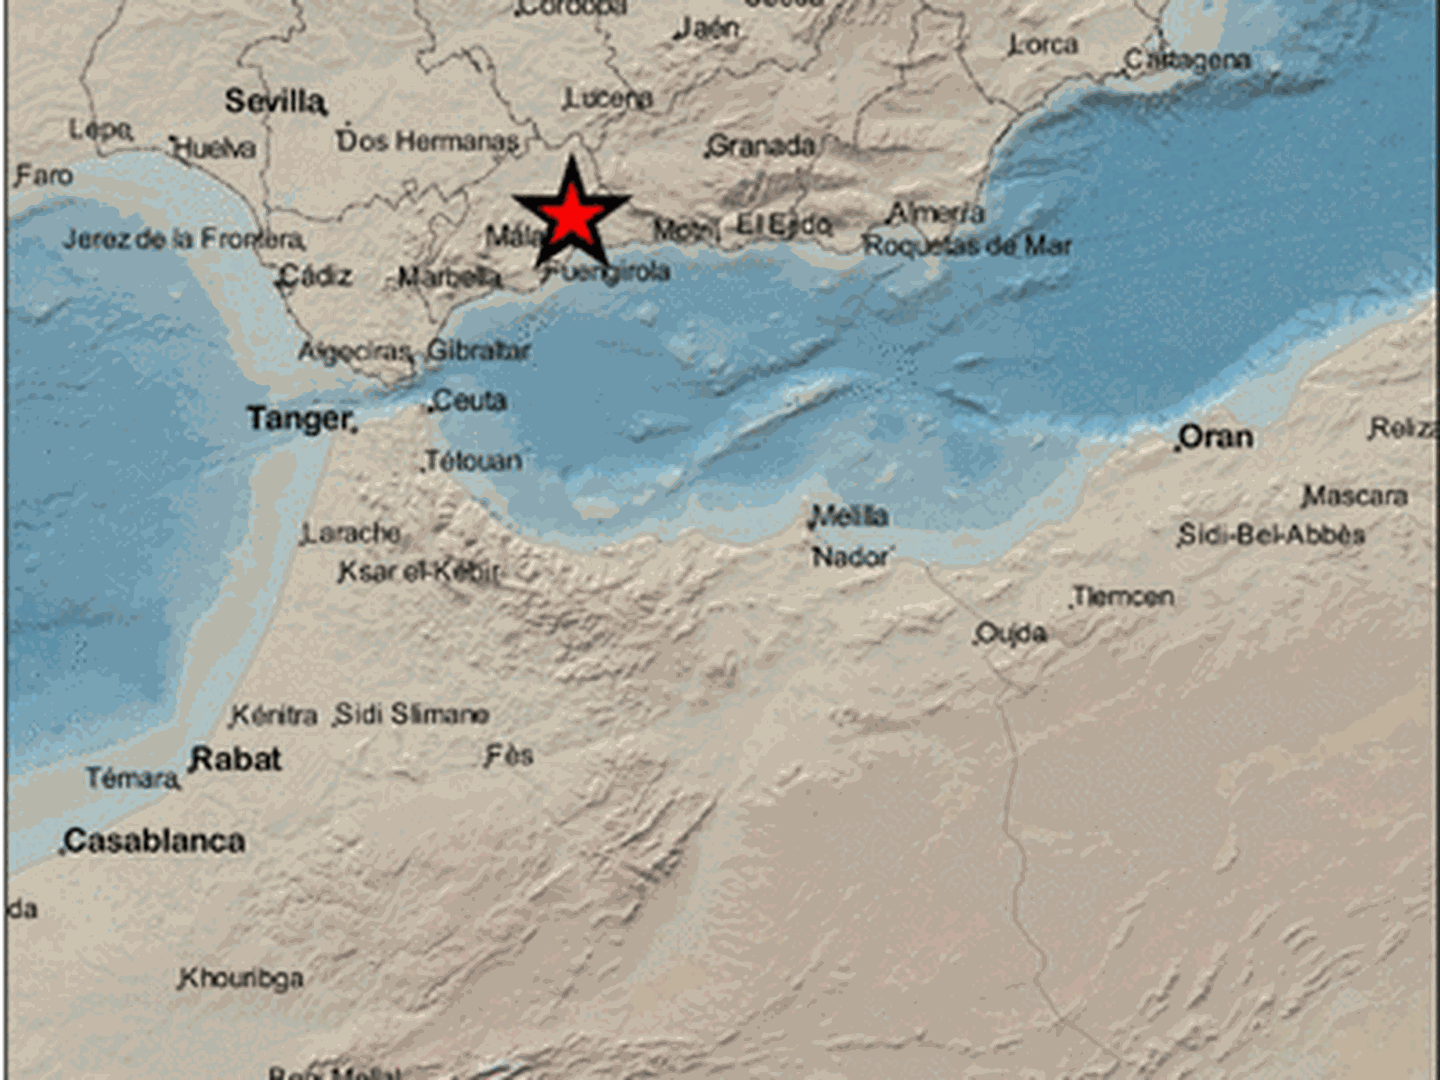 Epicentro del terremoto en las proximidades de Casabermeja. (IGN)